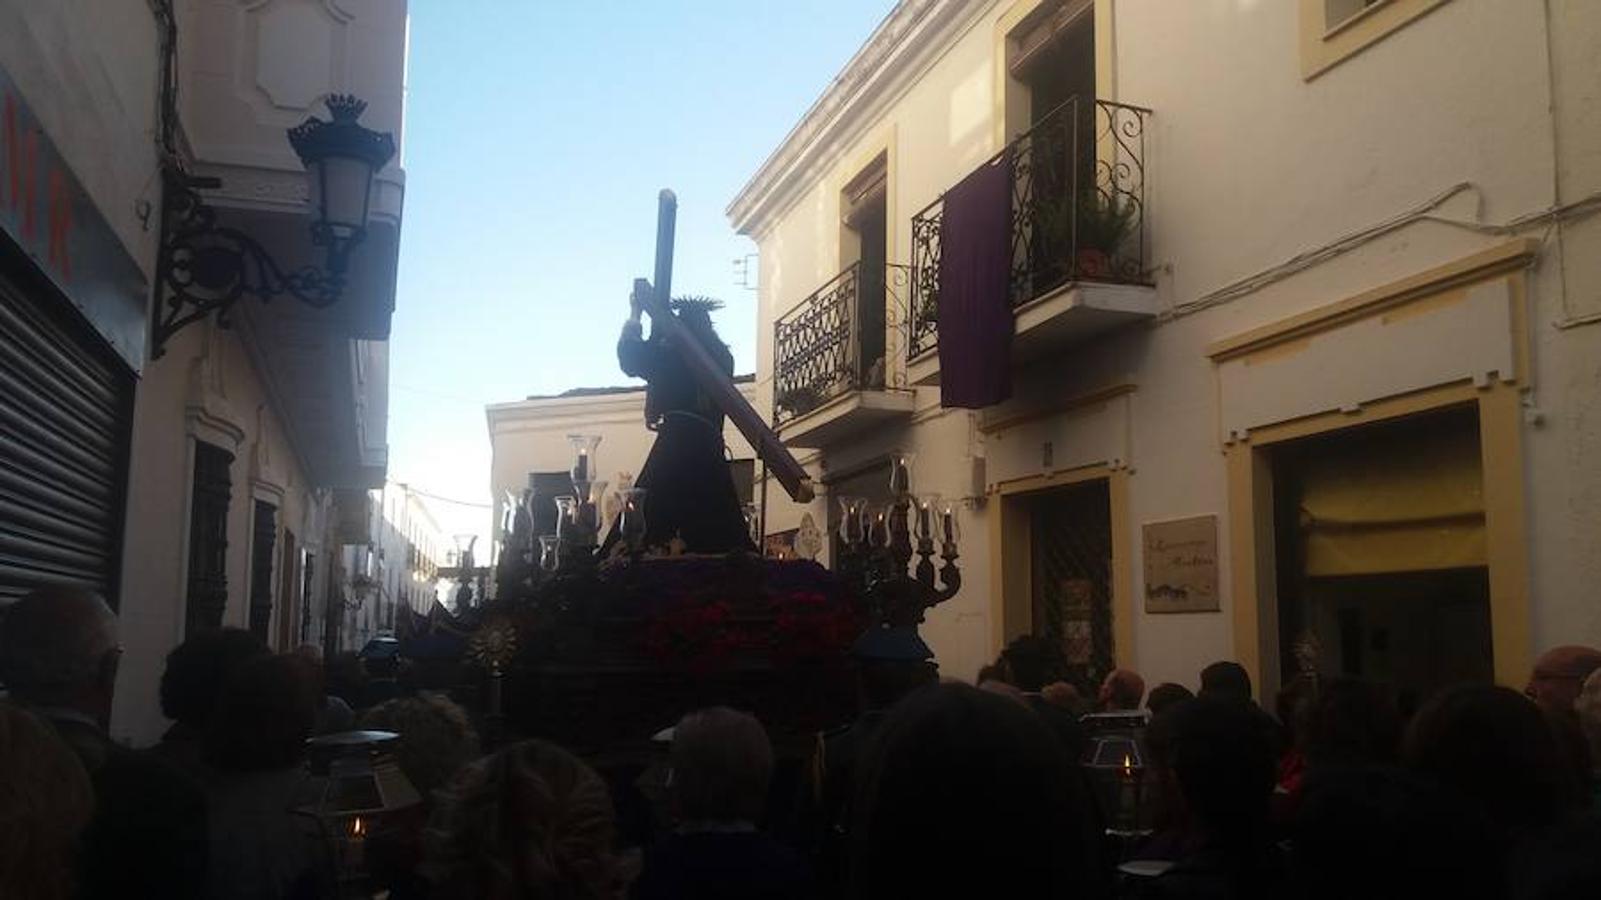 Olivenza festeja a su Patrón con la tradicional procesión de Nuestro Señor Jesús de los Pasos